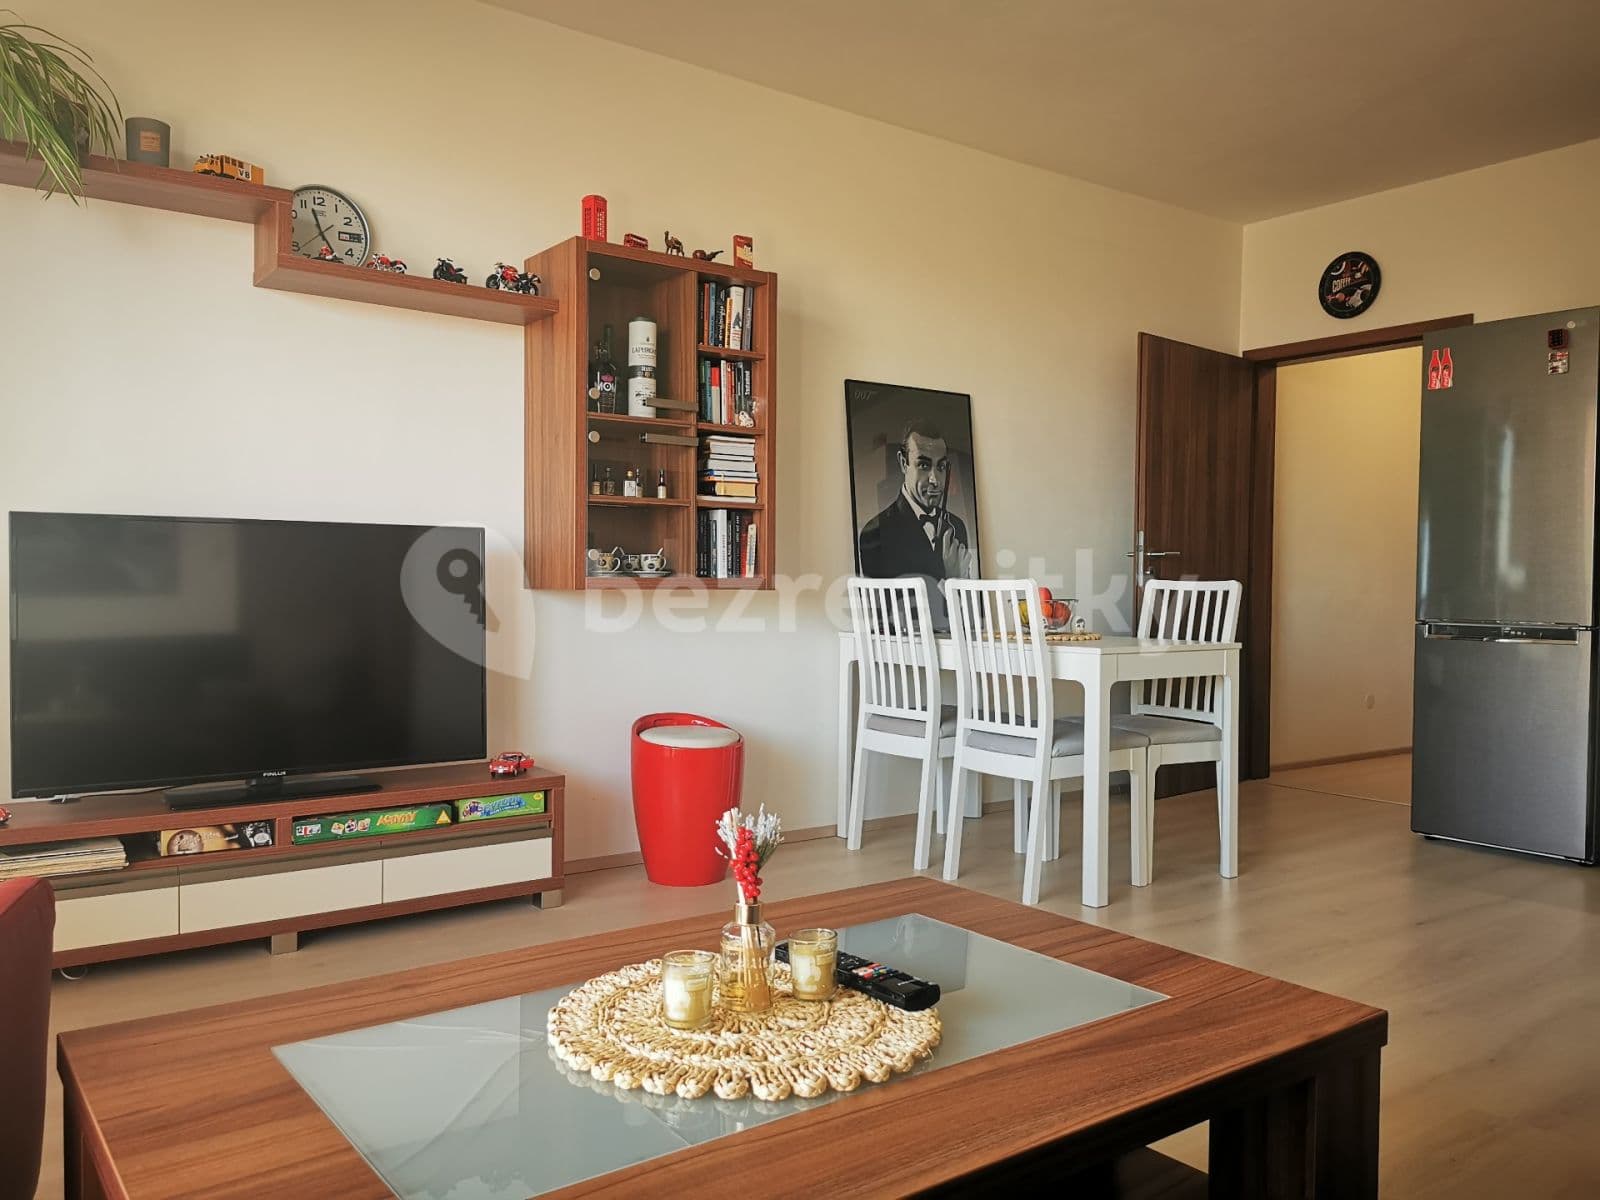 1 bedroom with open-plan kitchen flat for sale, 54 m², Holubice, Jihomoravský Region